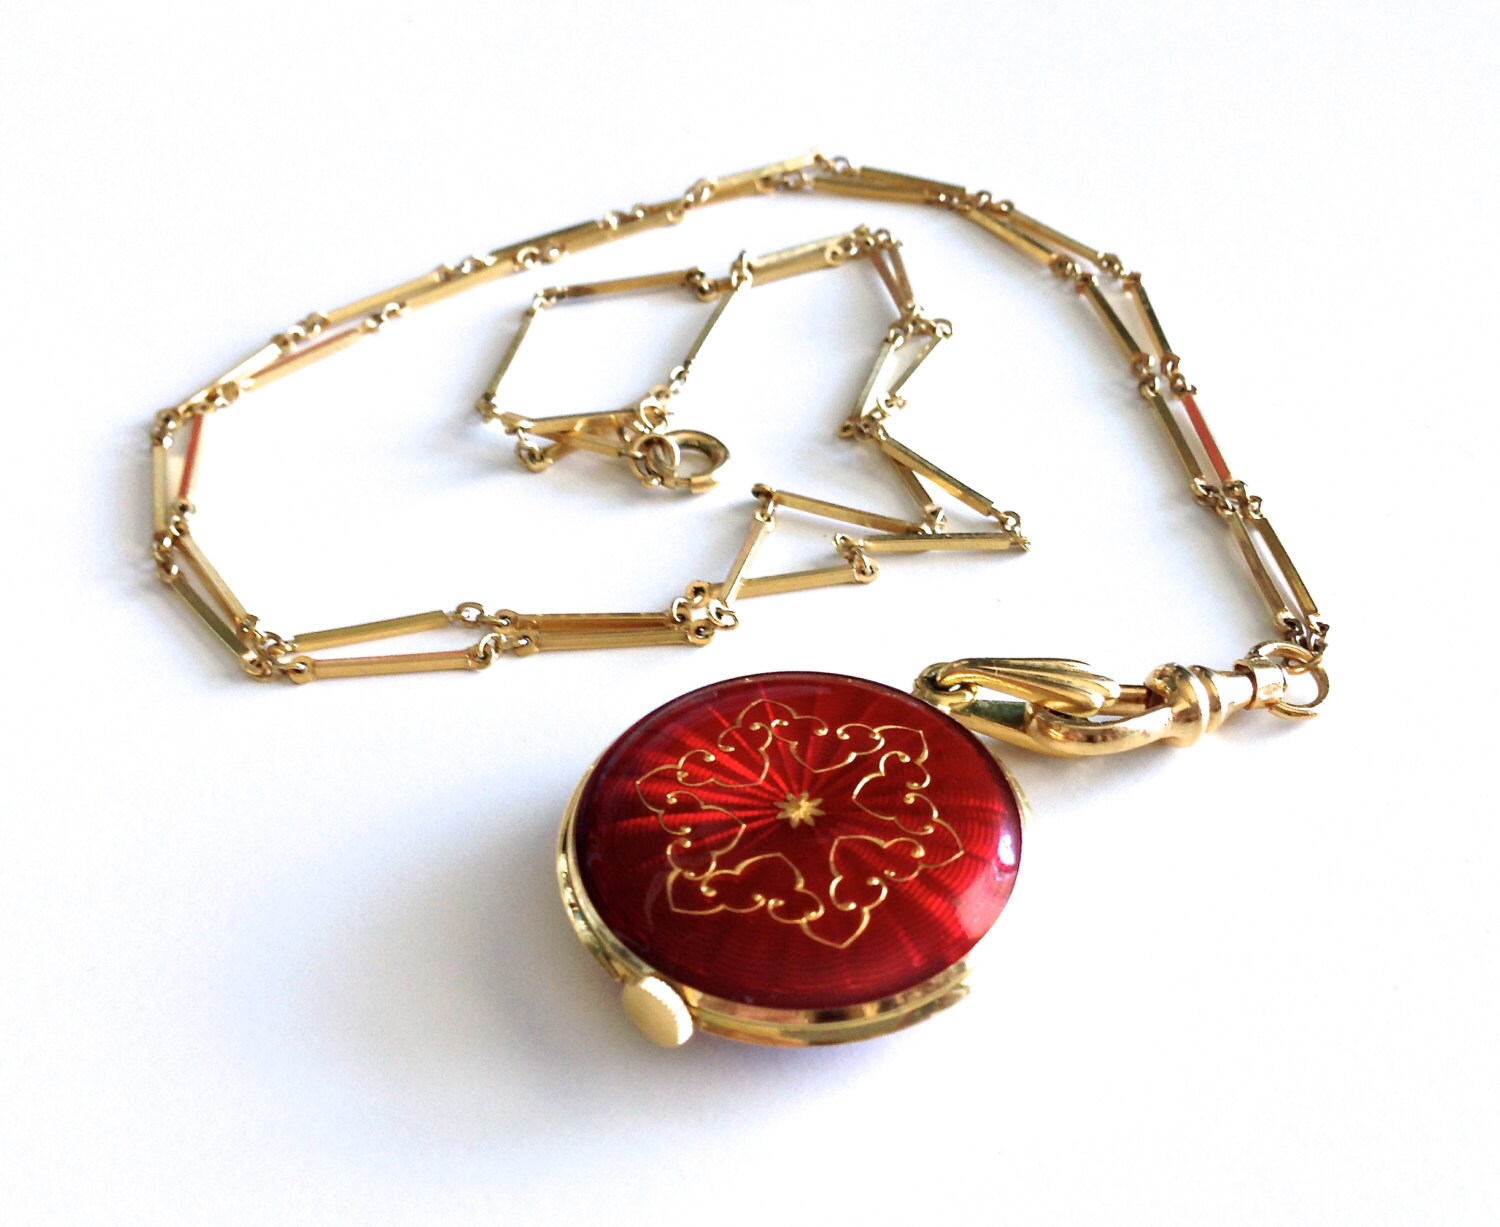 Vintage Bucherer Swiss Red Enamel Long Pendant Watch Necklace